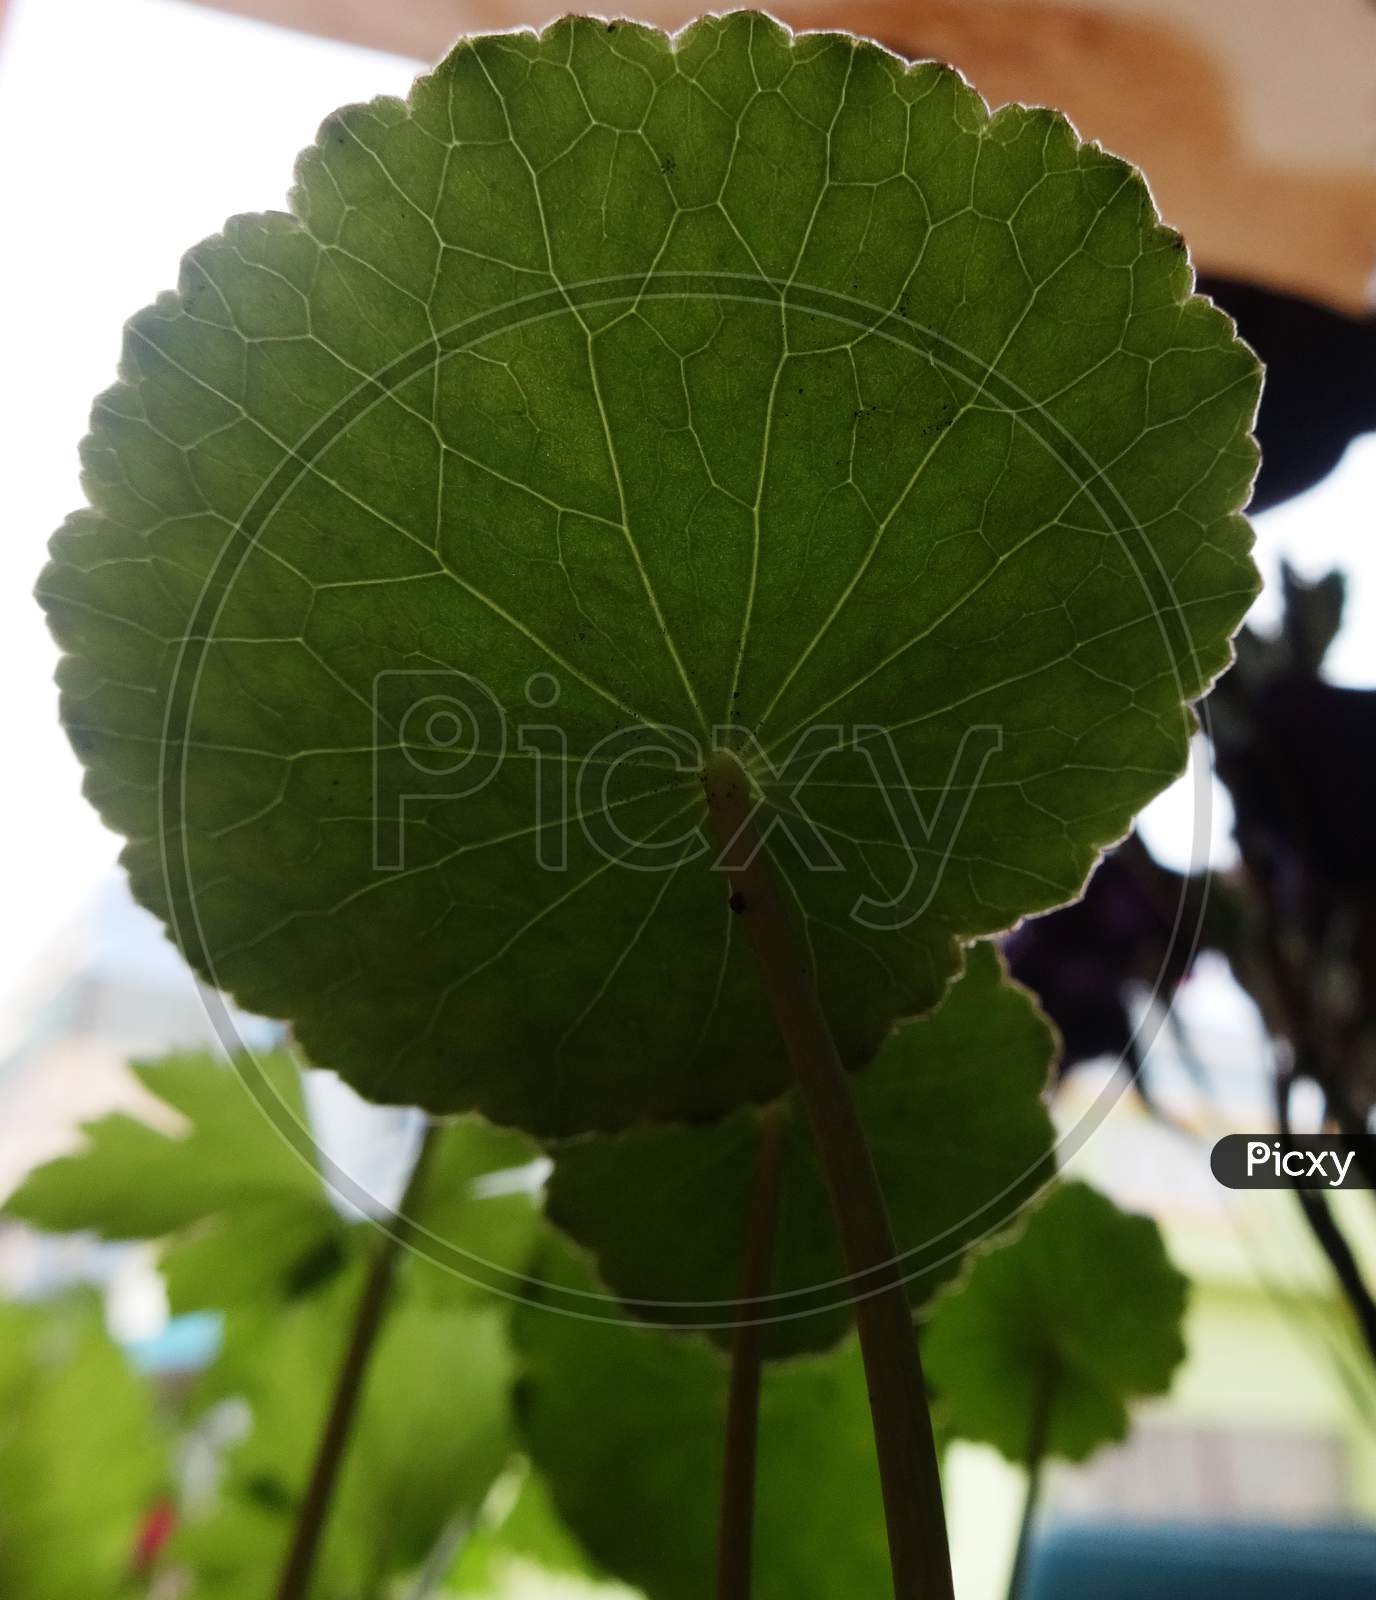 Leaf backside